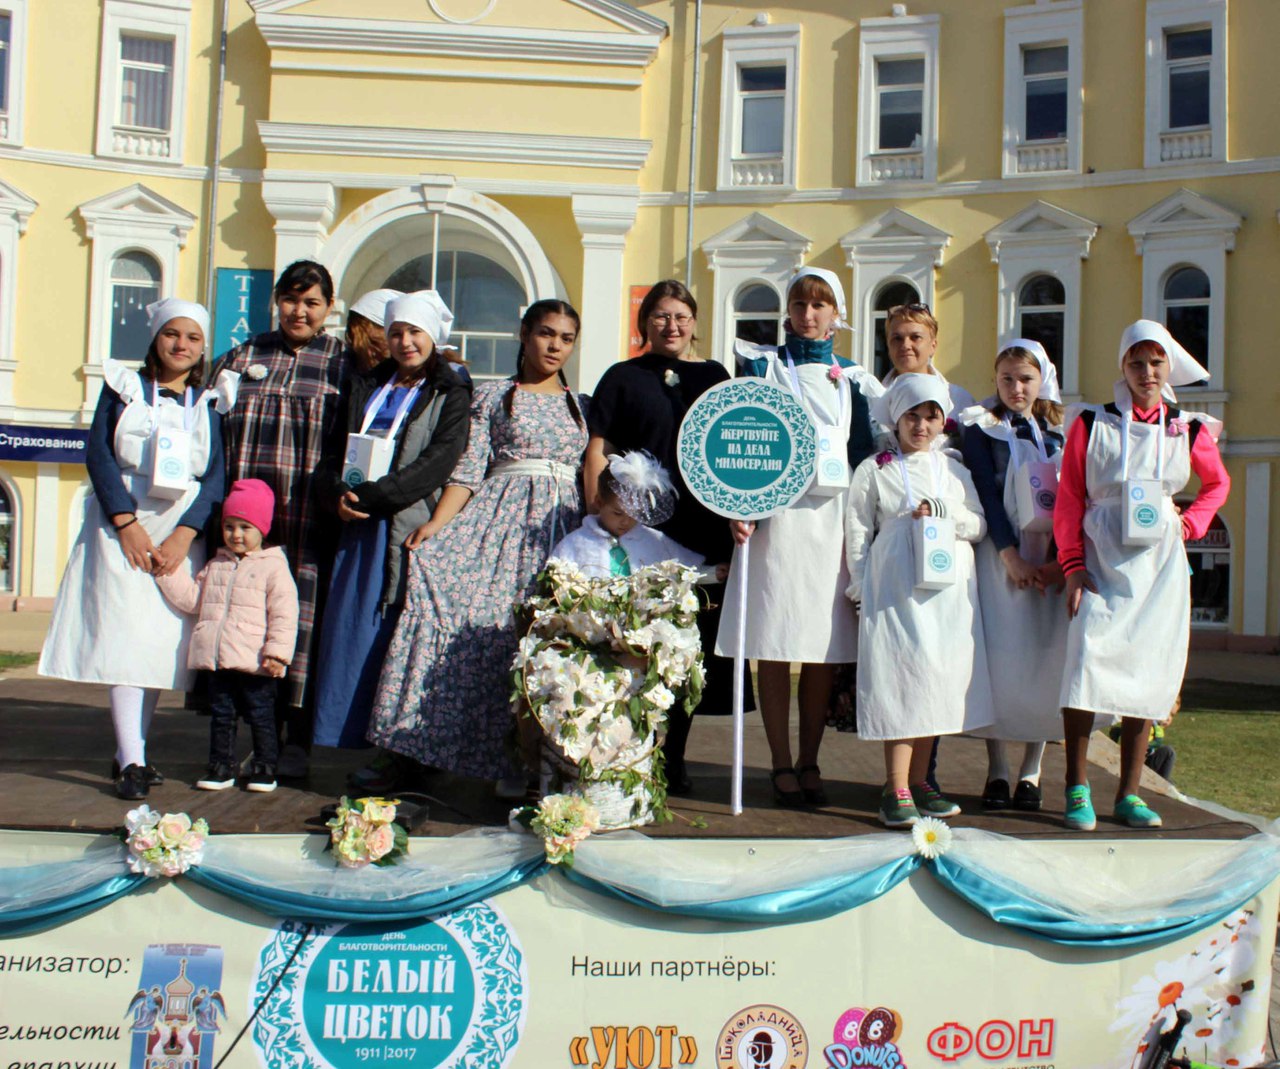 Праздник милосердия и благотворительности «Белый Цветок» впервые прошел в Астрахани 1 октября 2017 года